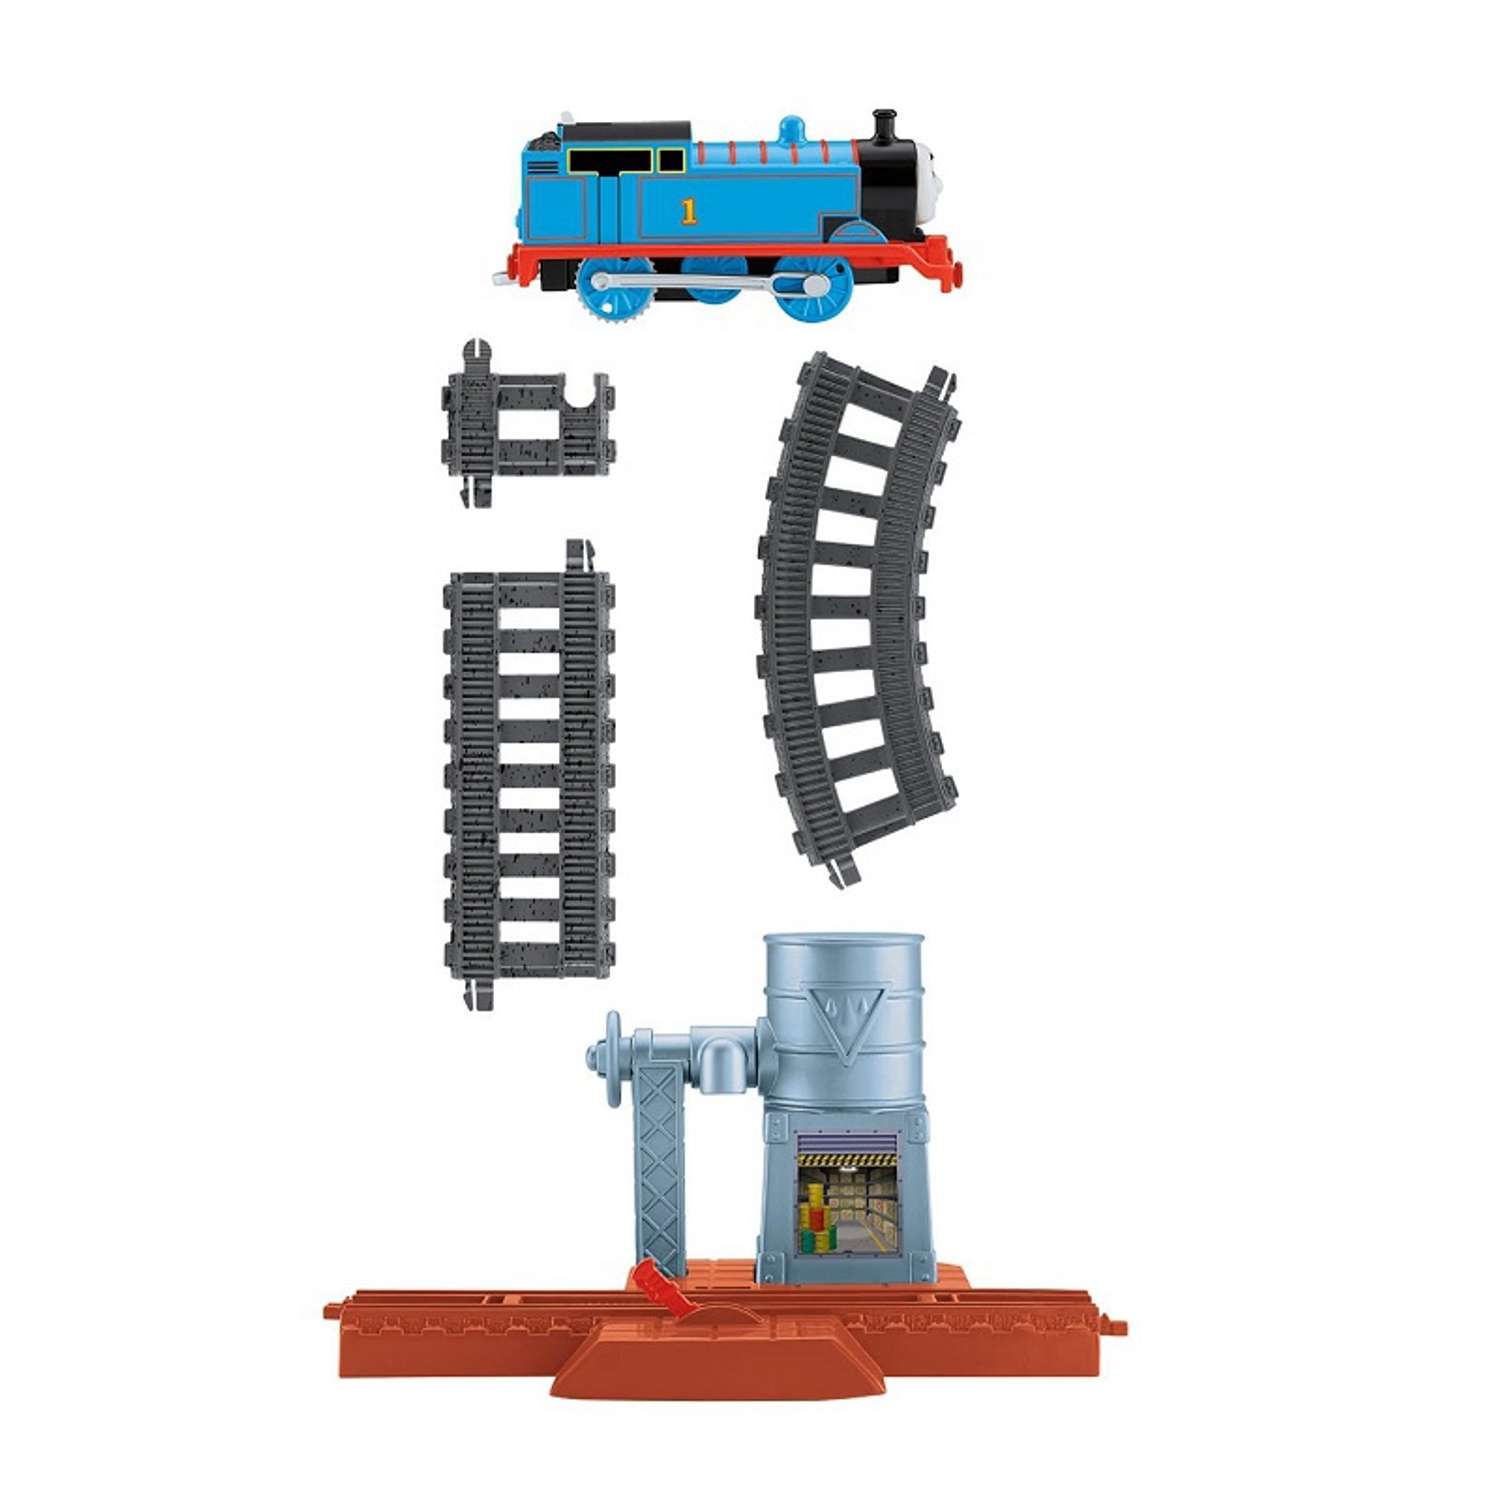 Базовый игровой набор Thomas & Friends Водонапорная башня (Trackmaster) BDP11 - фото 3